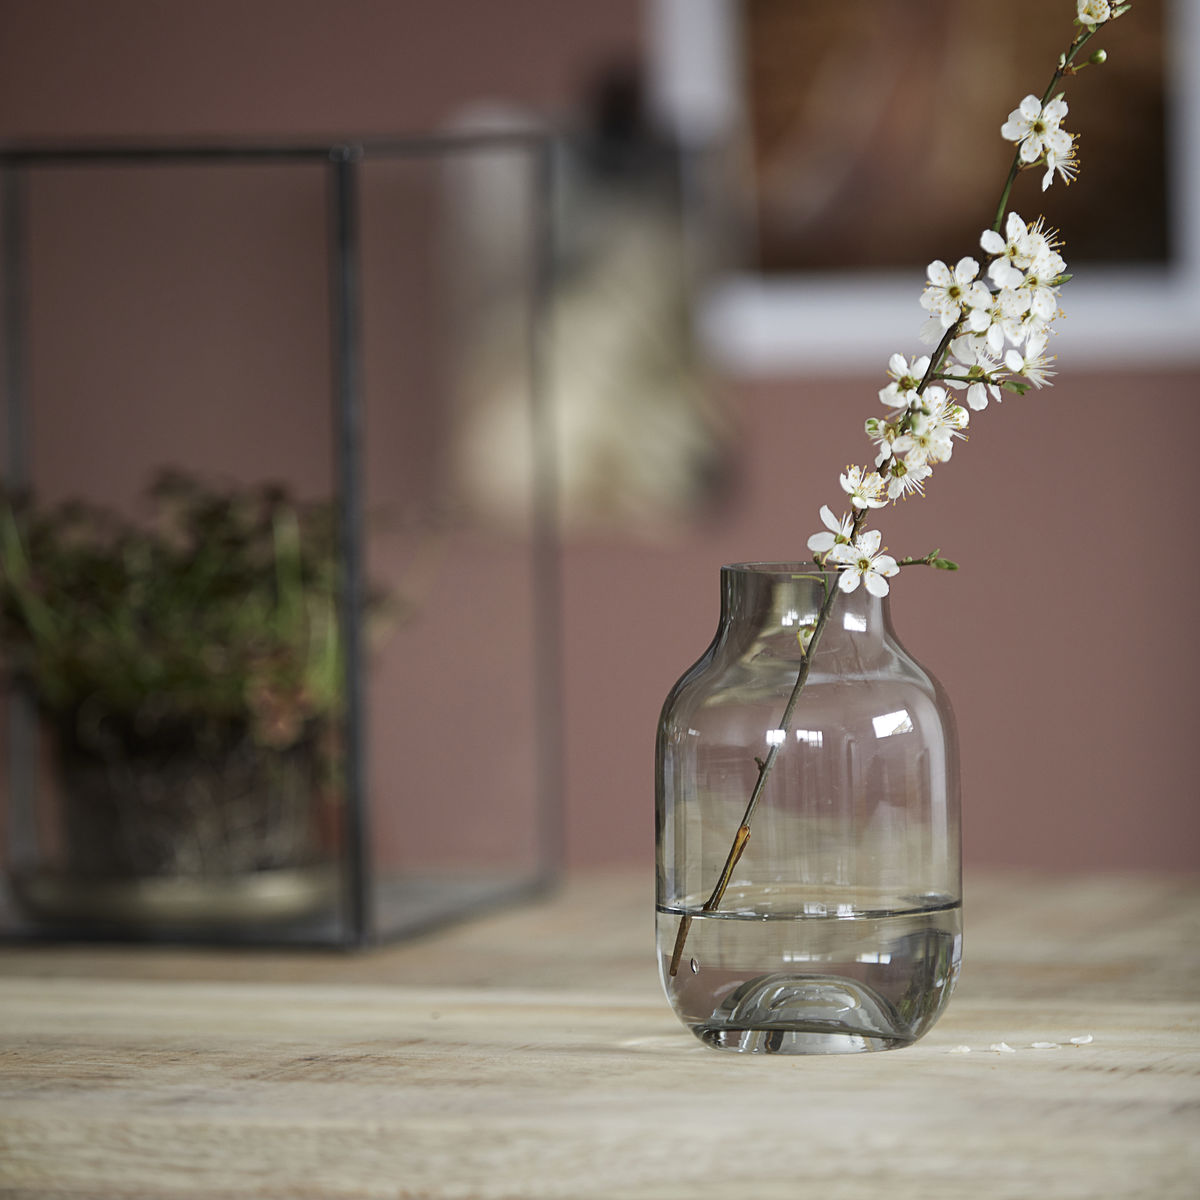 Vase i smoke farve. Den grålige nuance giver en flot kontrast til de ellers ofte klare vaser og spiller med de omkringliggende farver så som kontrasten ved de hvide blomster.